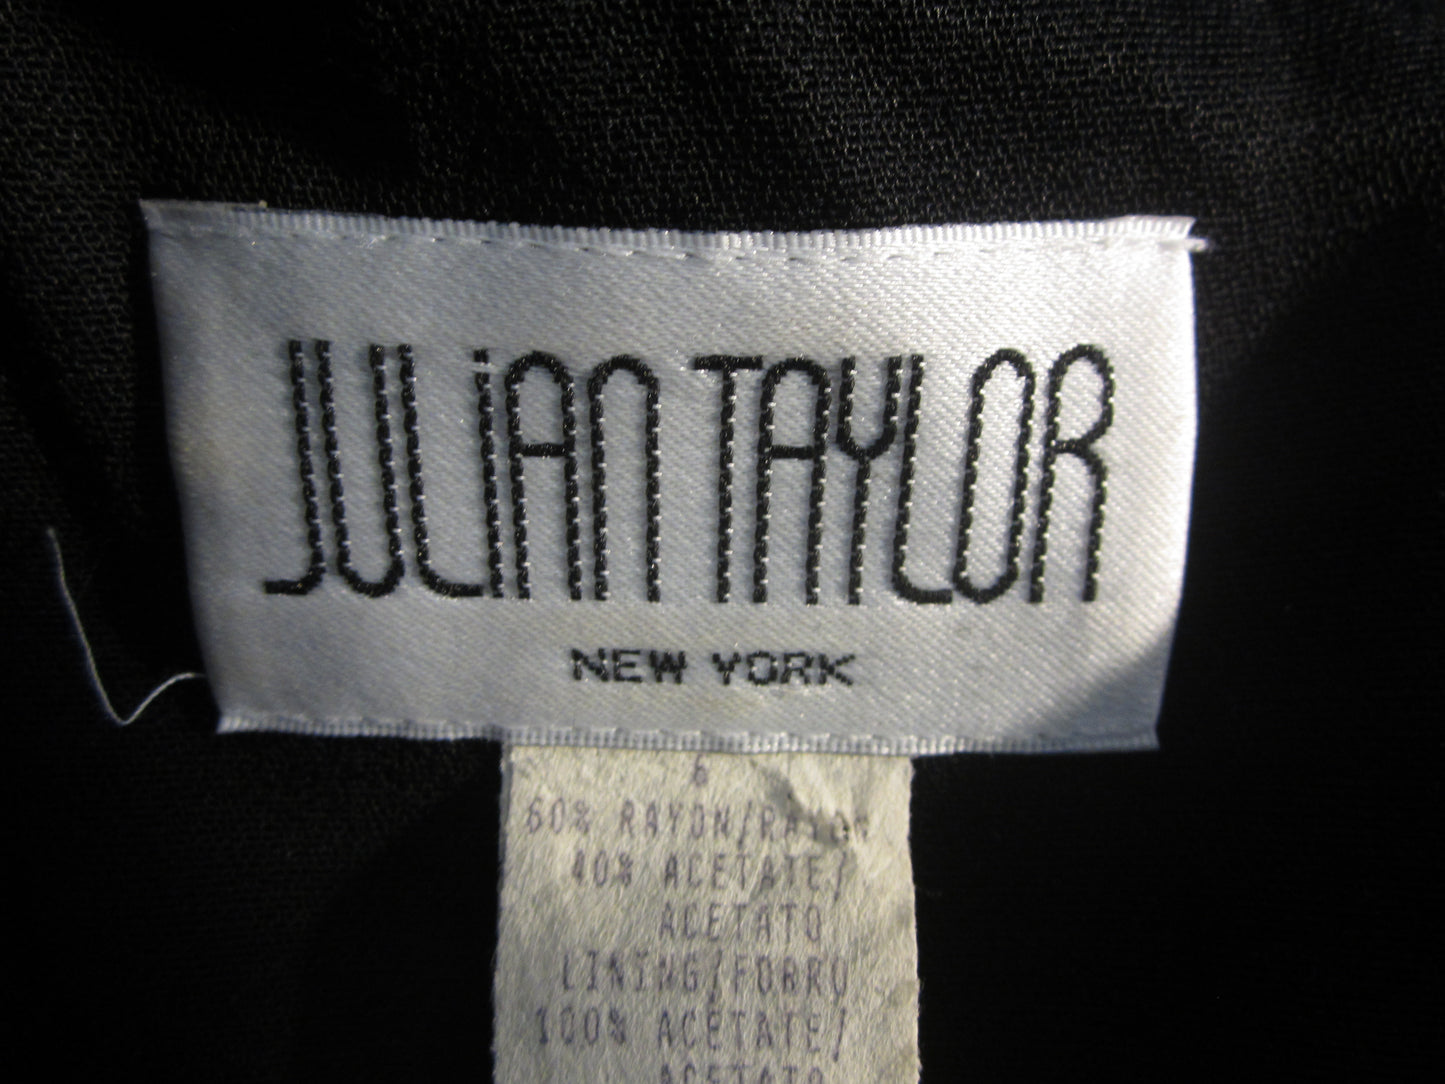 Julian Taylor Women's Dress Size 6 SKU 000285-2